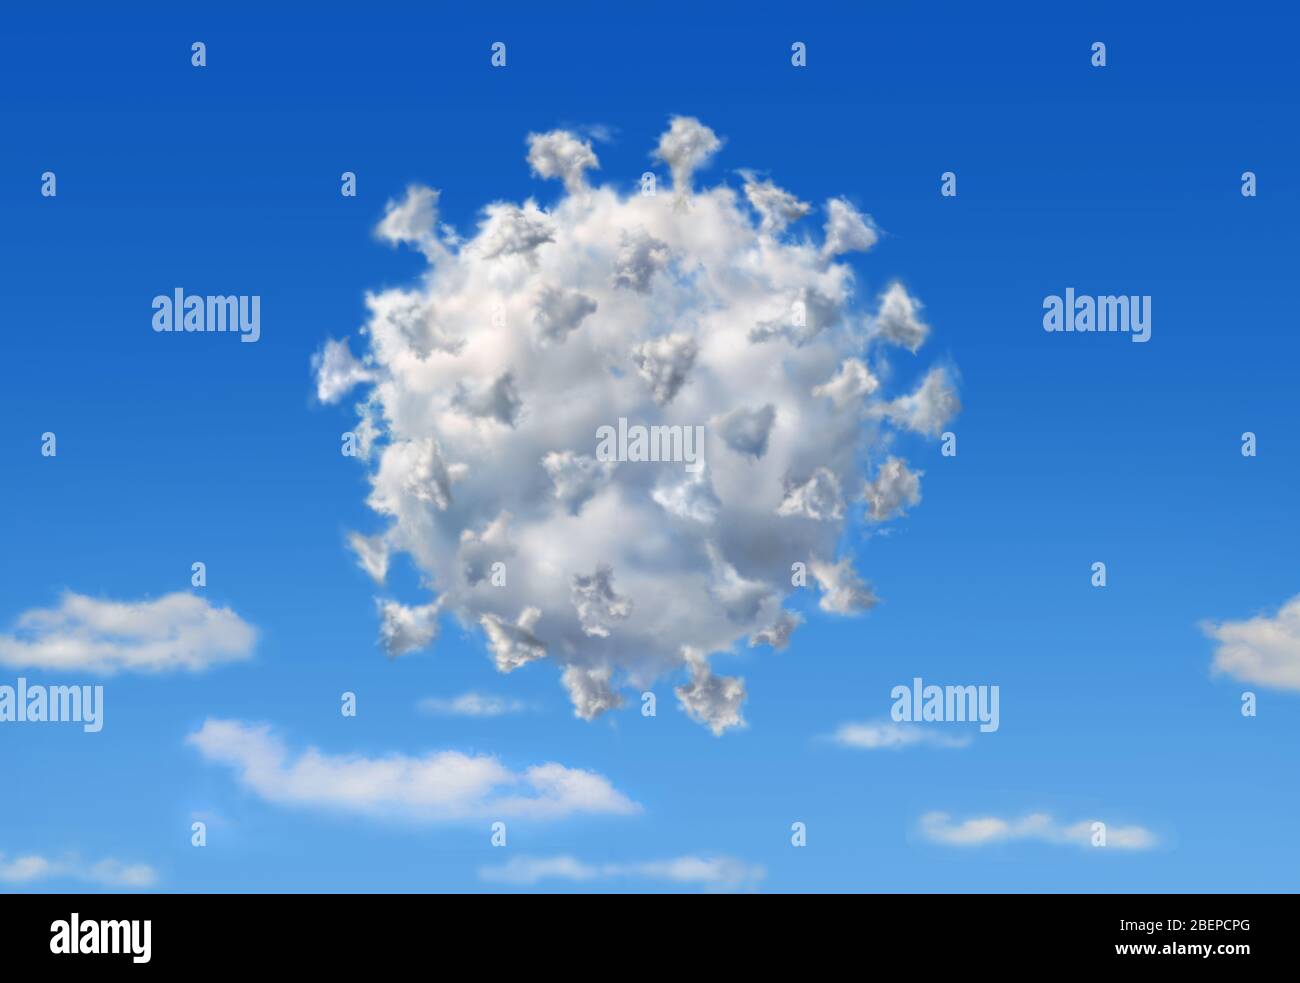 Nuage moelleux avec la forme de Coronavirus Covid19, sur le ciel bleu avec d'autres nuages inférieurs. Illustration du concept. Banque D'Images